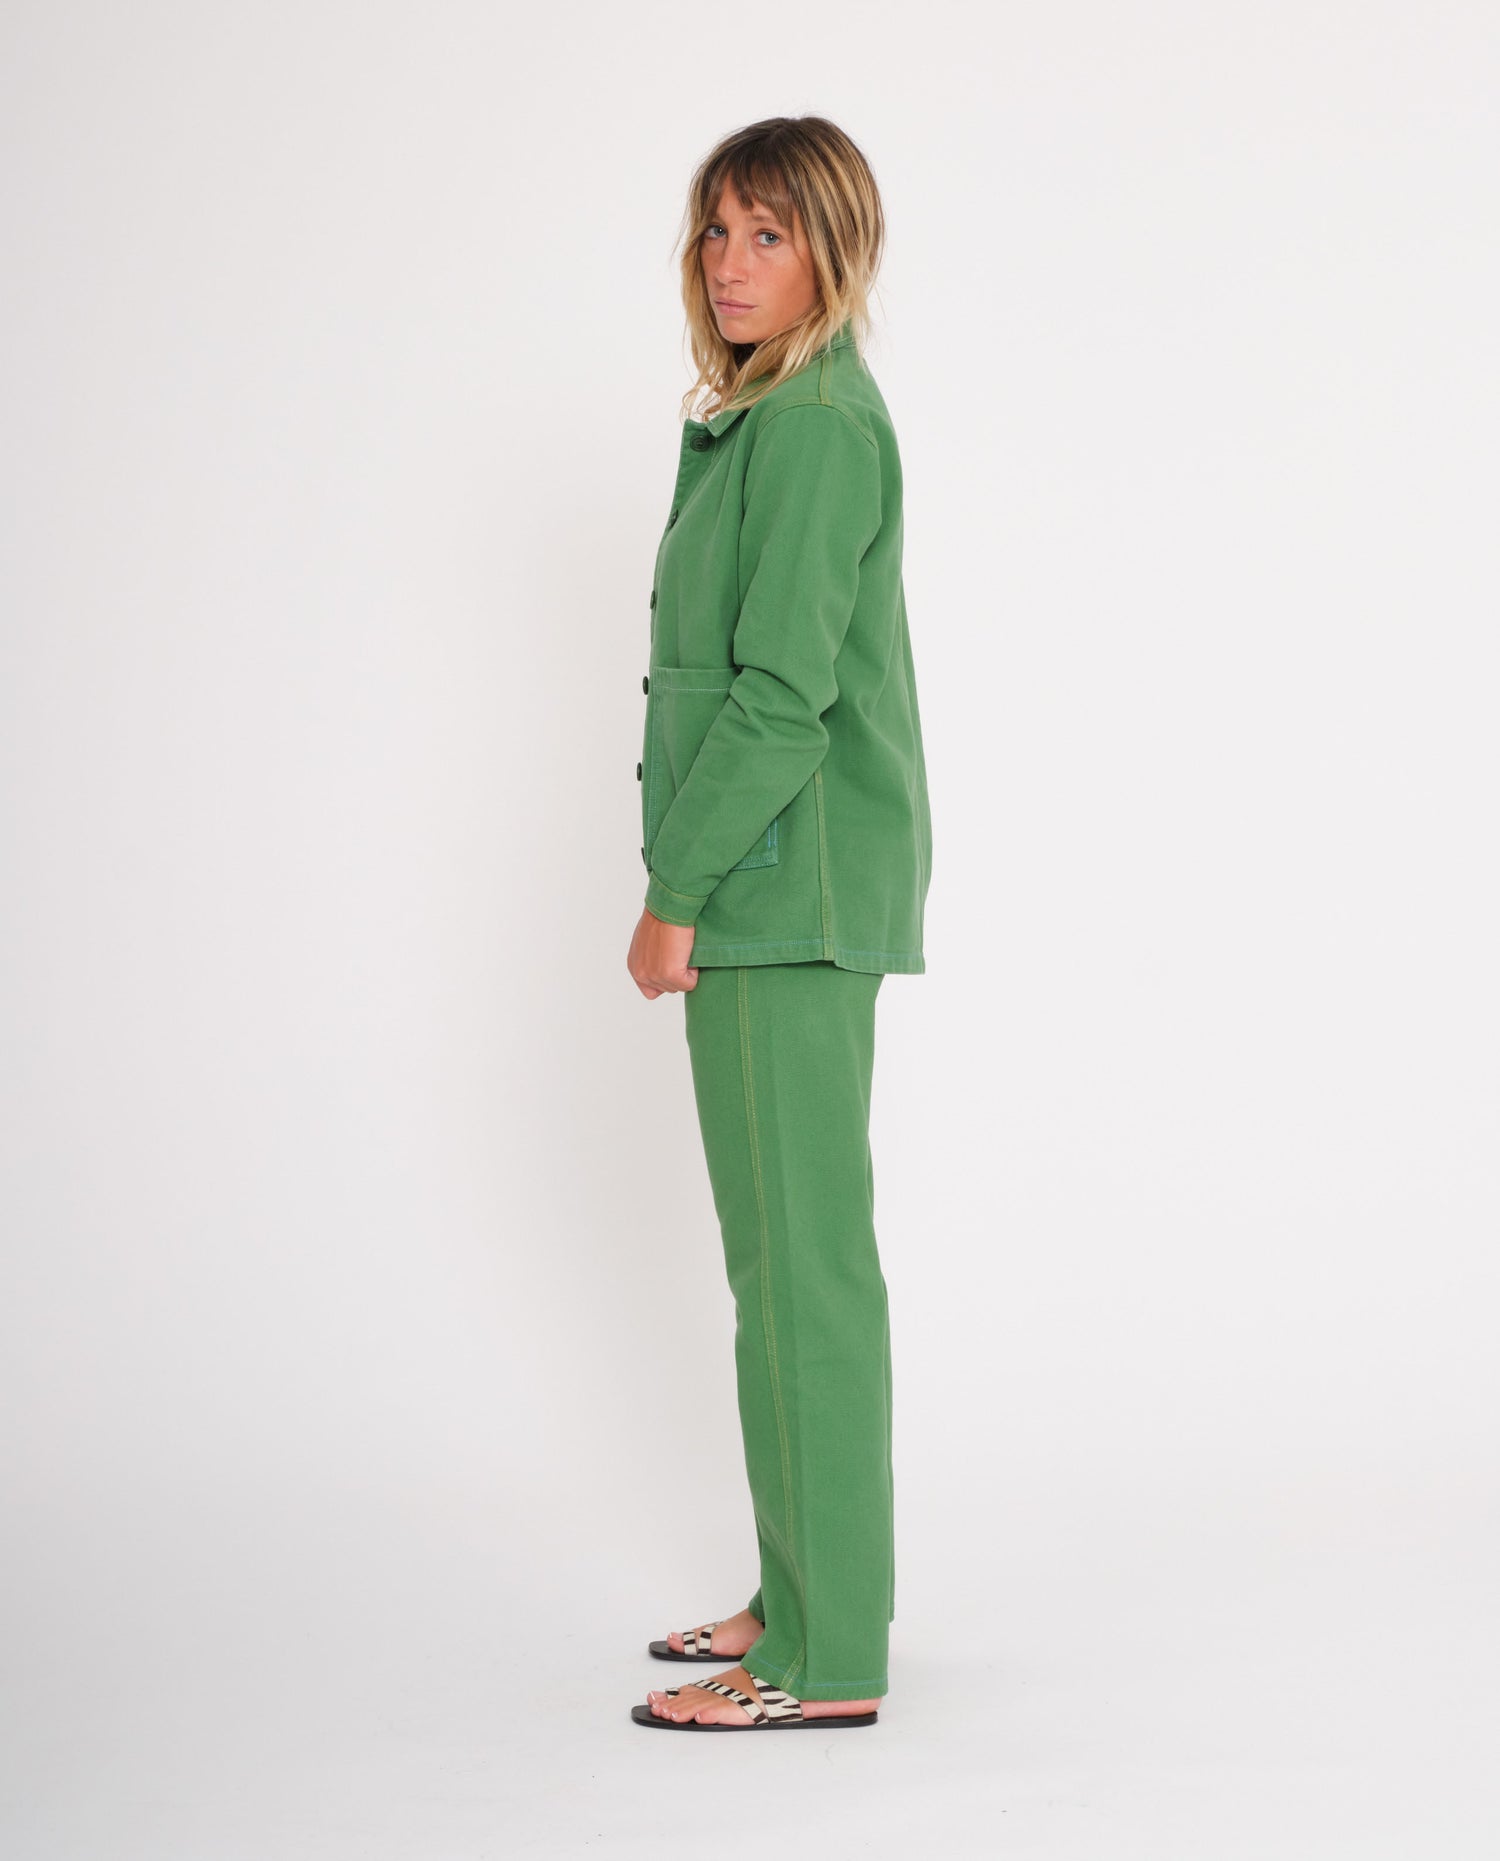 marché commun graine femme veste de travail coton biologique éthique vert gazon